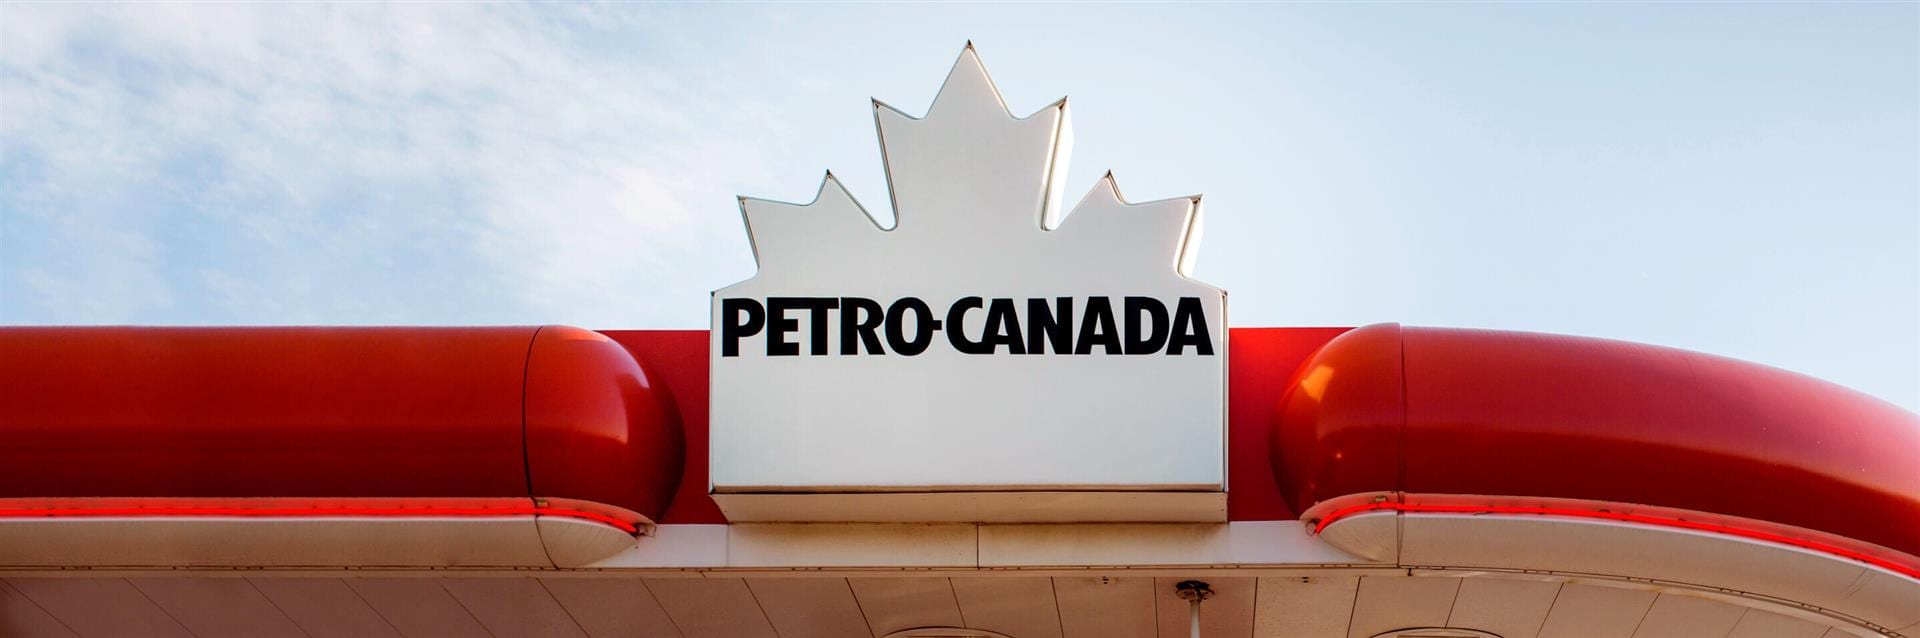 À propos de Petro-Canada